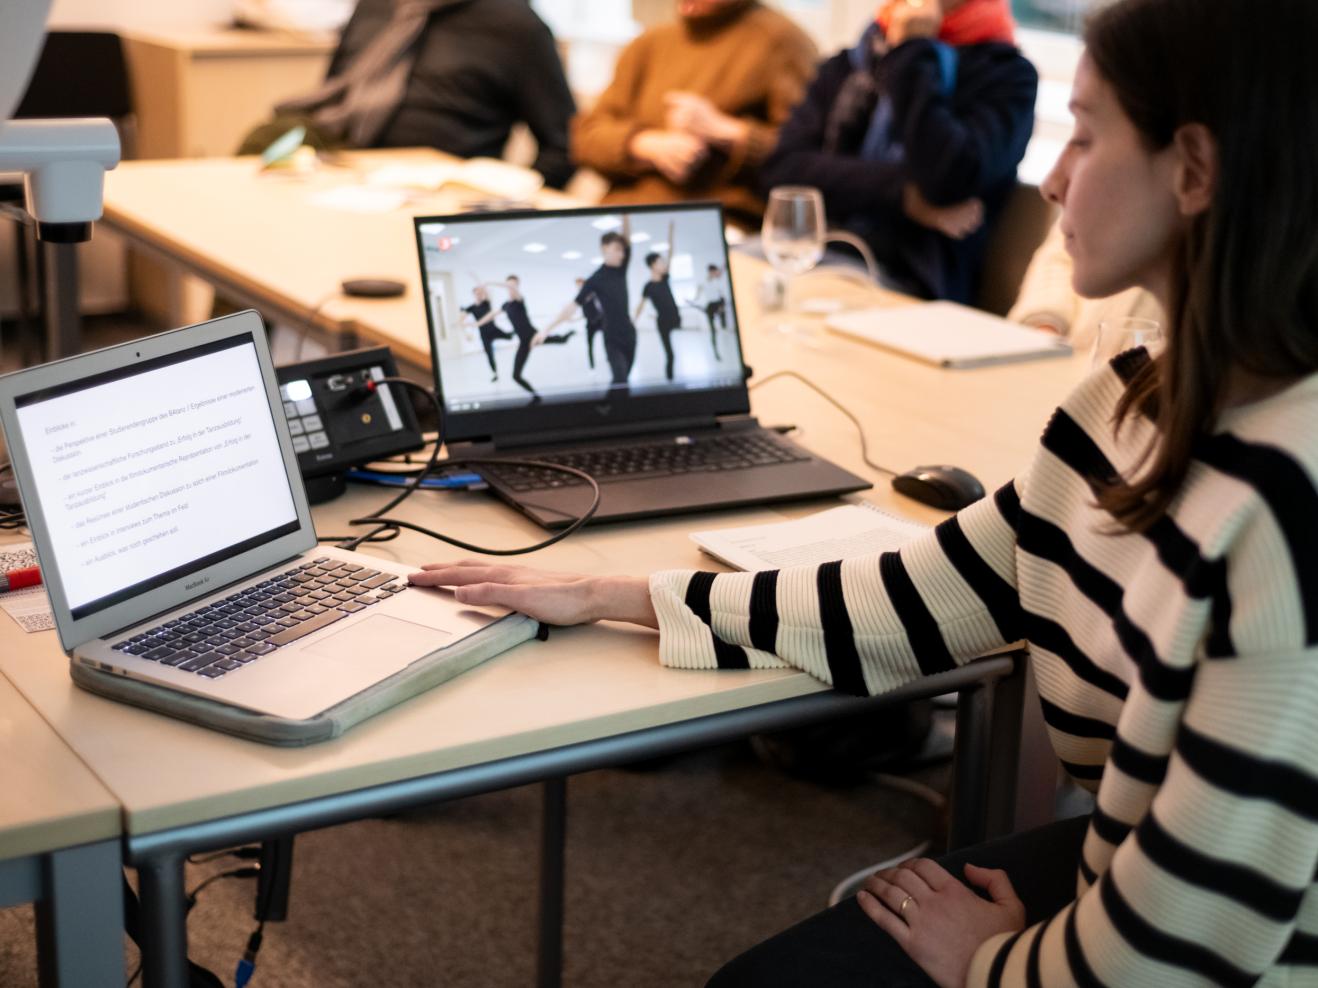 Im Vordergrund rechts sehen wir eine Frau im Profil, die sitzt und auf zwei Laptops links von ihr blickt. Ein Laptop zeigt Text, der andere das Still eines Tanzvideos. Im Hintergrund sind unscharf Zuhörende zu erkennen.